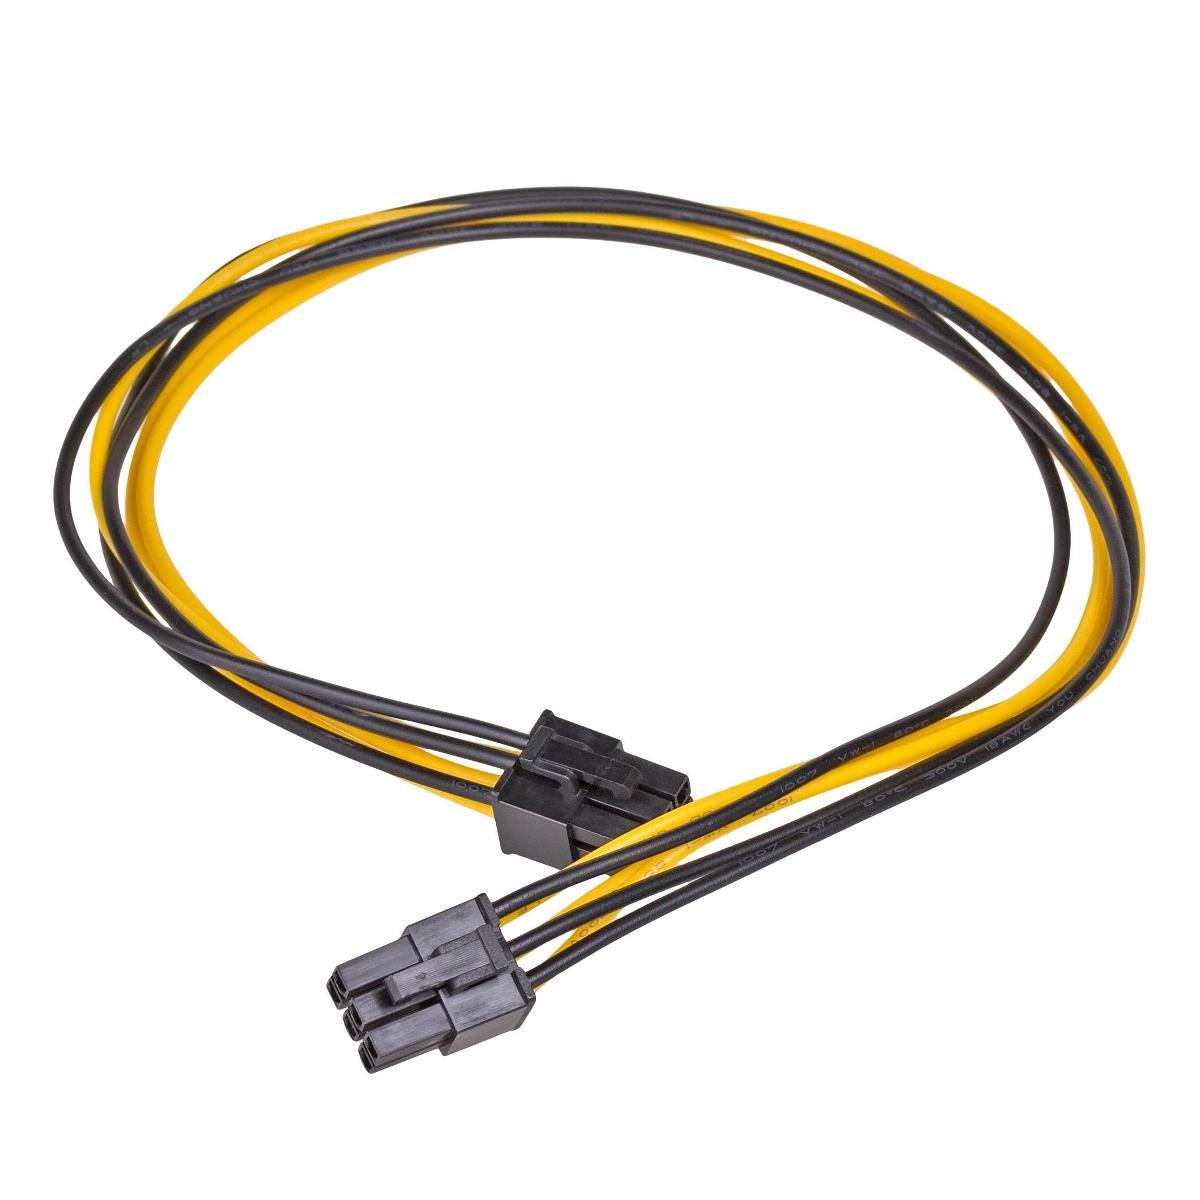 Zdjęcia - Kabel Akyga Adapter PCI E 6-pin - PCI-E 6-pin  AK-CA-49, 0.4 m 